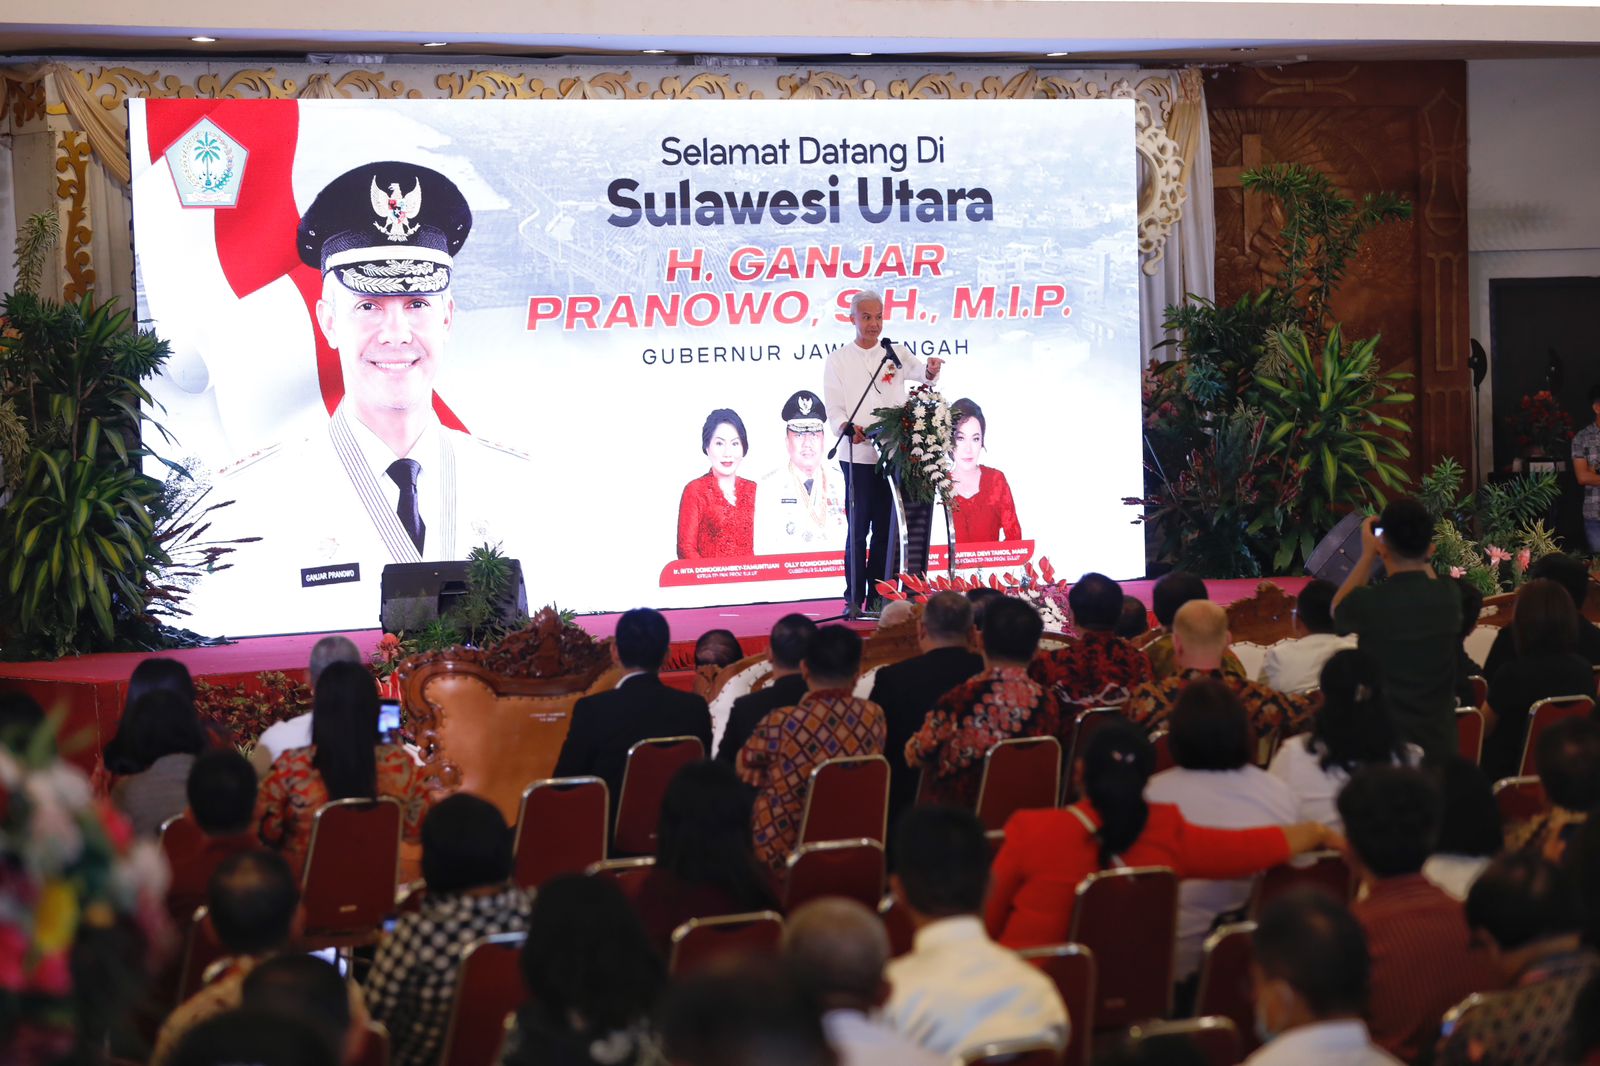 Bertemu Tokoh Agama Sulut, Ganjar; Kita Harus Contoh Kerukunan Beragama Sulawesi Utara